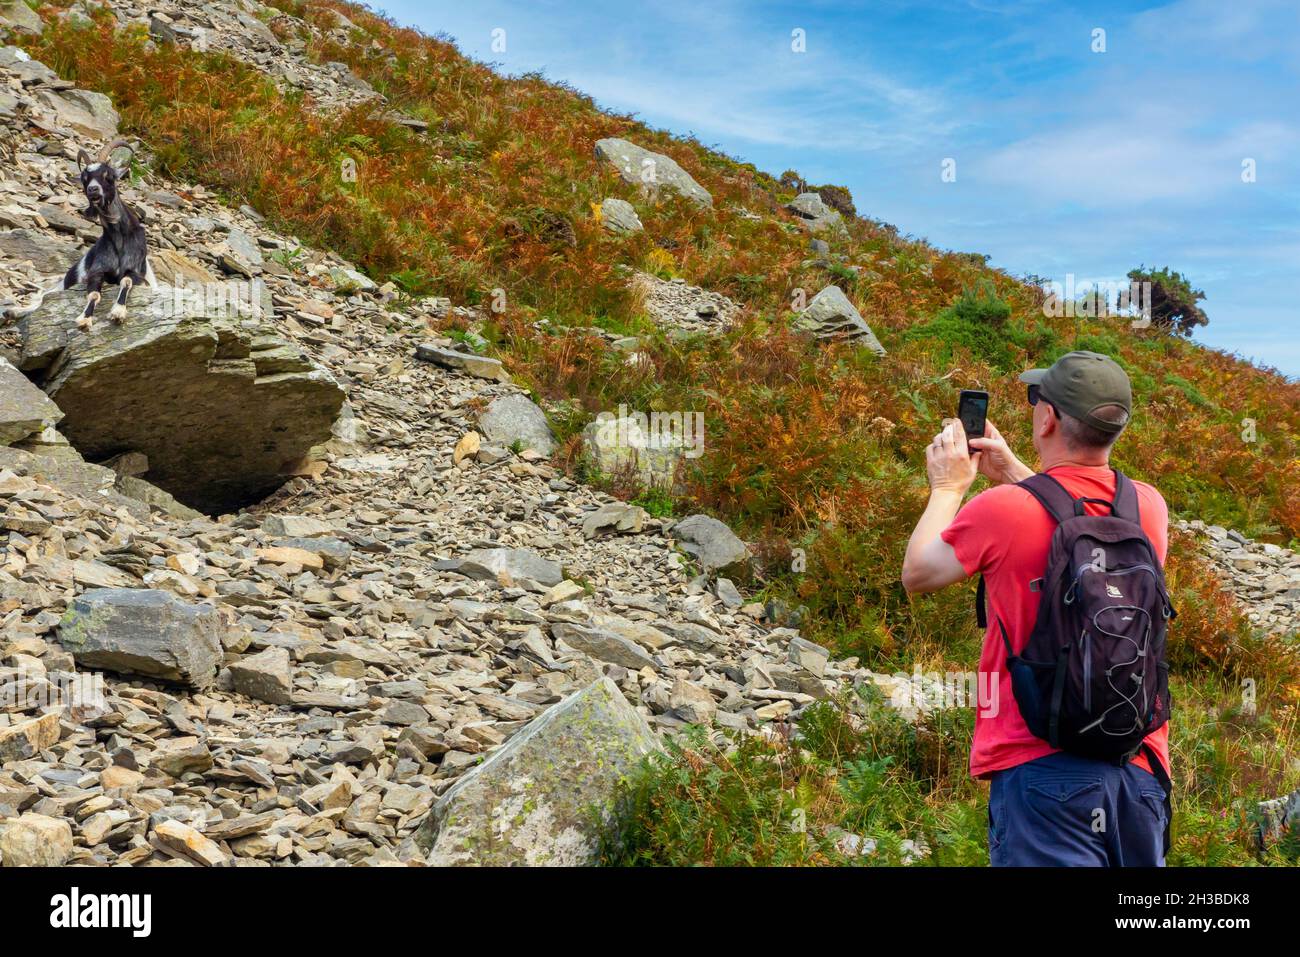 Turista fotografando la capra selvaggia alla Valle delle rocce vicino a Lynmouth nel parco nazionale di Exmoor Devon nord Inghilterra Regno Unito Foto Stock